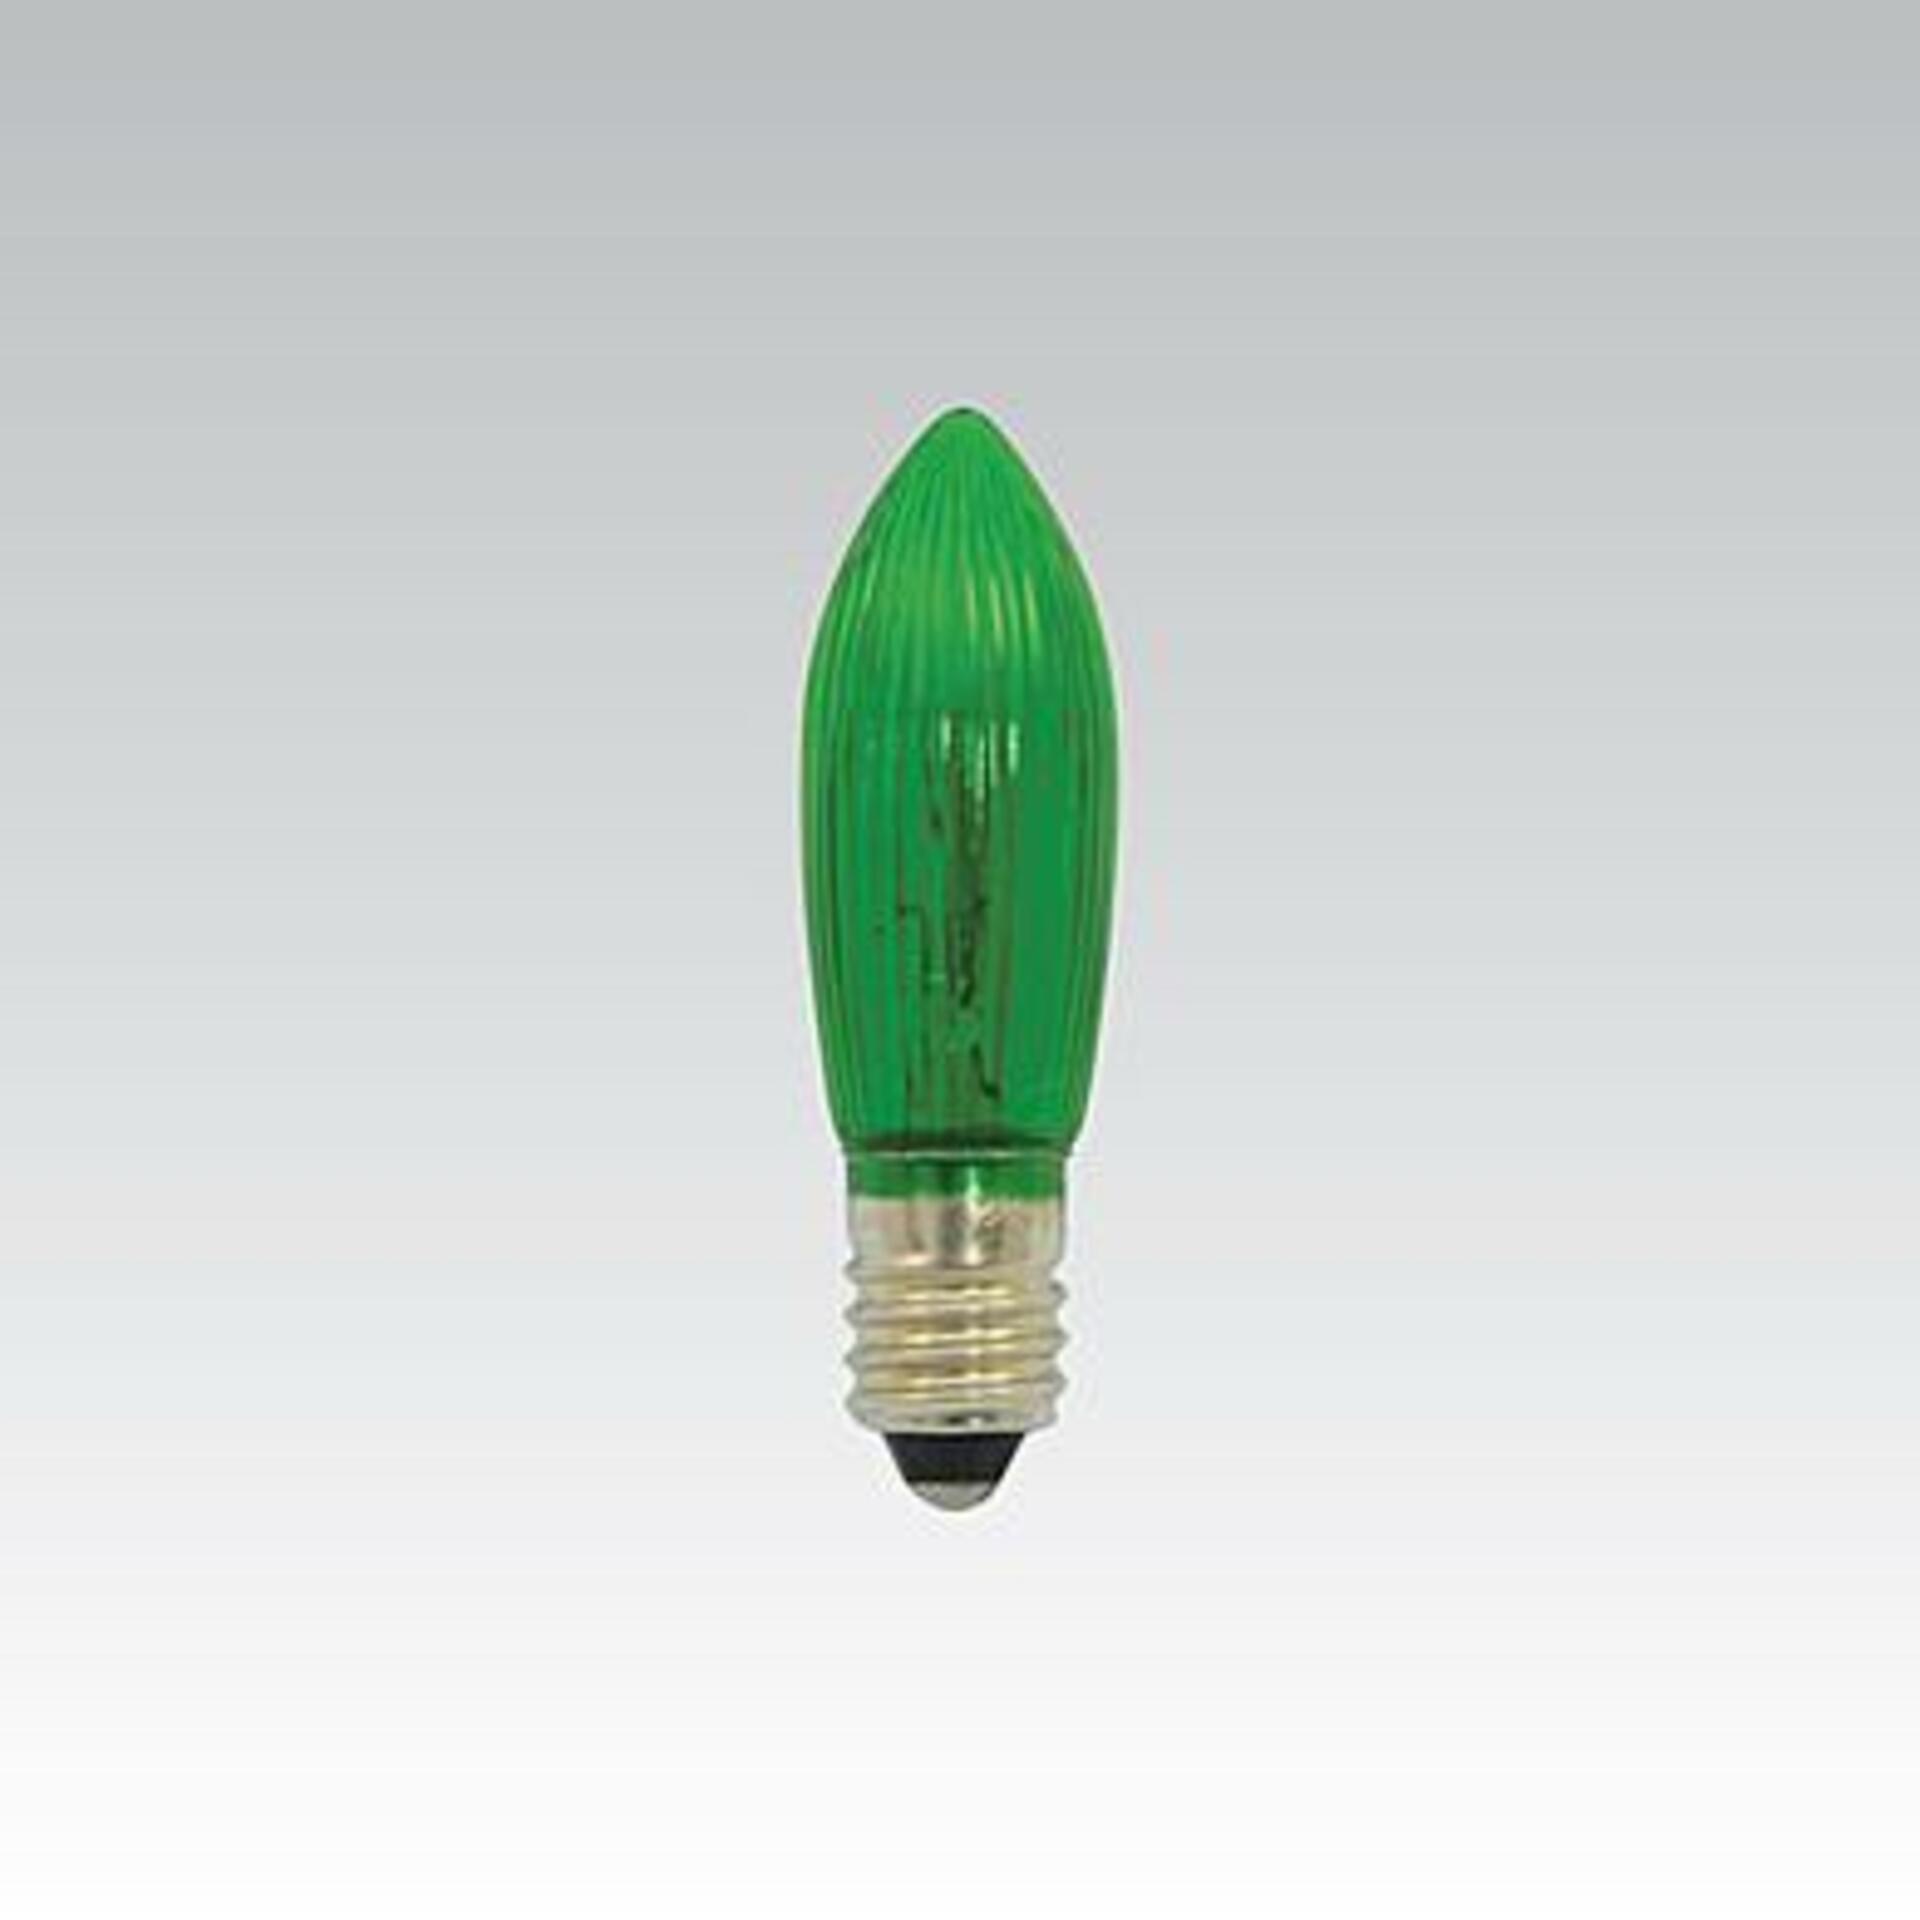 NBB Žárovka vánoční E10 23V 3W zelená 374012000